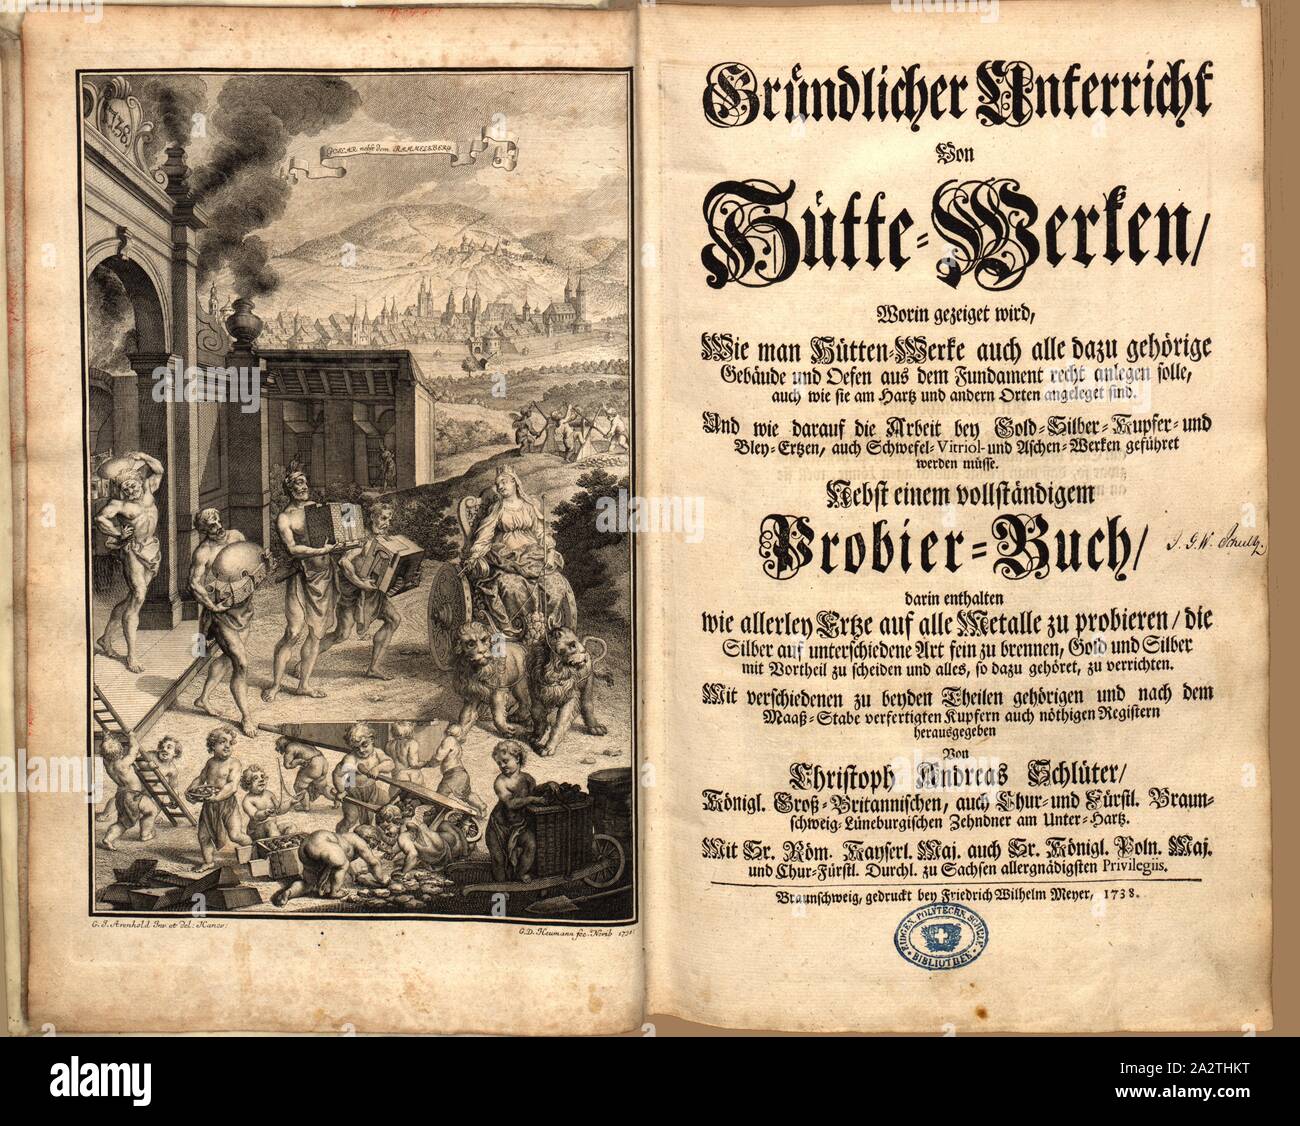 Goslar and the Rammelsberg, Frontispiece and title page of a textbook on metallurgical works, Signed: G. I. Arenhold Inv., et del: Hanov: G.D. Heumann fec., Norib 1738, frontispiece, Arenhold, G. I. (inv. et del.); Heumann, G. D. (fec.), 1738, Christoph Andreas Schlüter: Gründlicher Unterricht von Hütte-Werken, worin gezeiget wird, wie man Hütten-Werke auch alle dazu gehörige Gebäude und Oefen aus dem Fundament recht anlegen solle [...]. Braunschweig: gedruckt bey Friedrich Wilhelm Meyer, 1738 Stock Photo